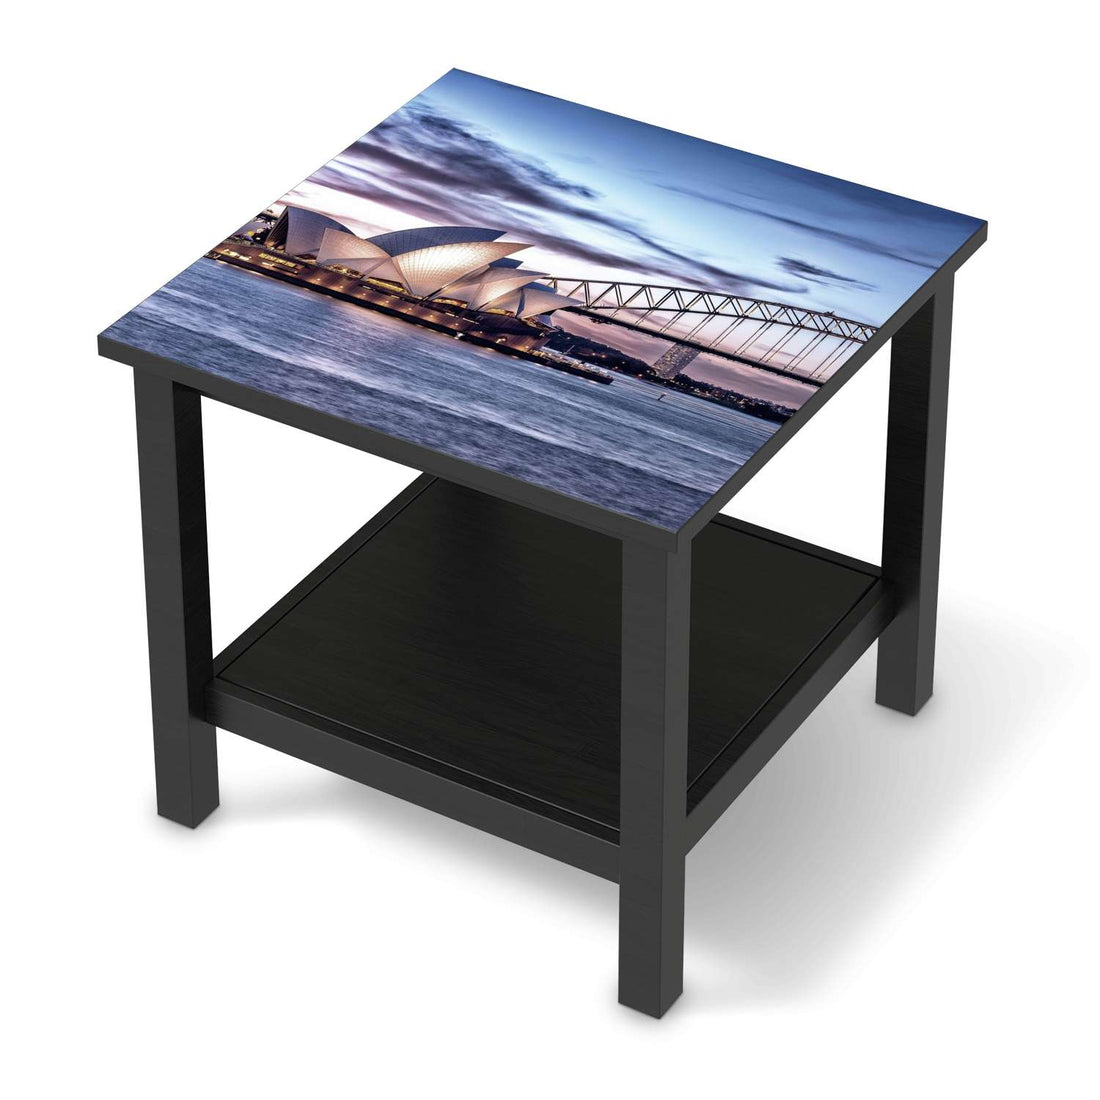 Möbel Klebefolie Sydney - IKEA Hemnes Beistelltisch 55x55 cm - schwarz